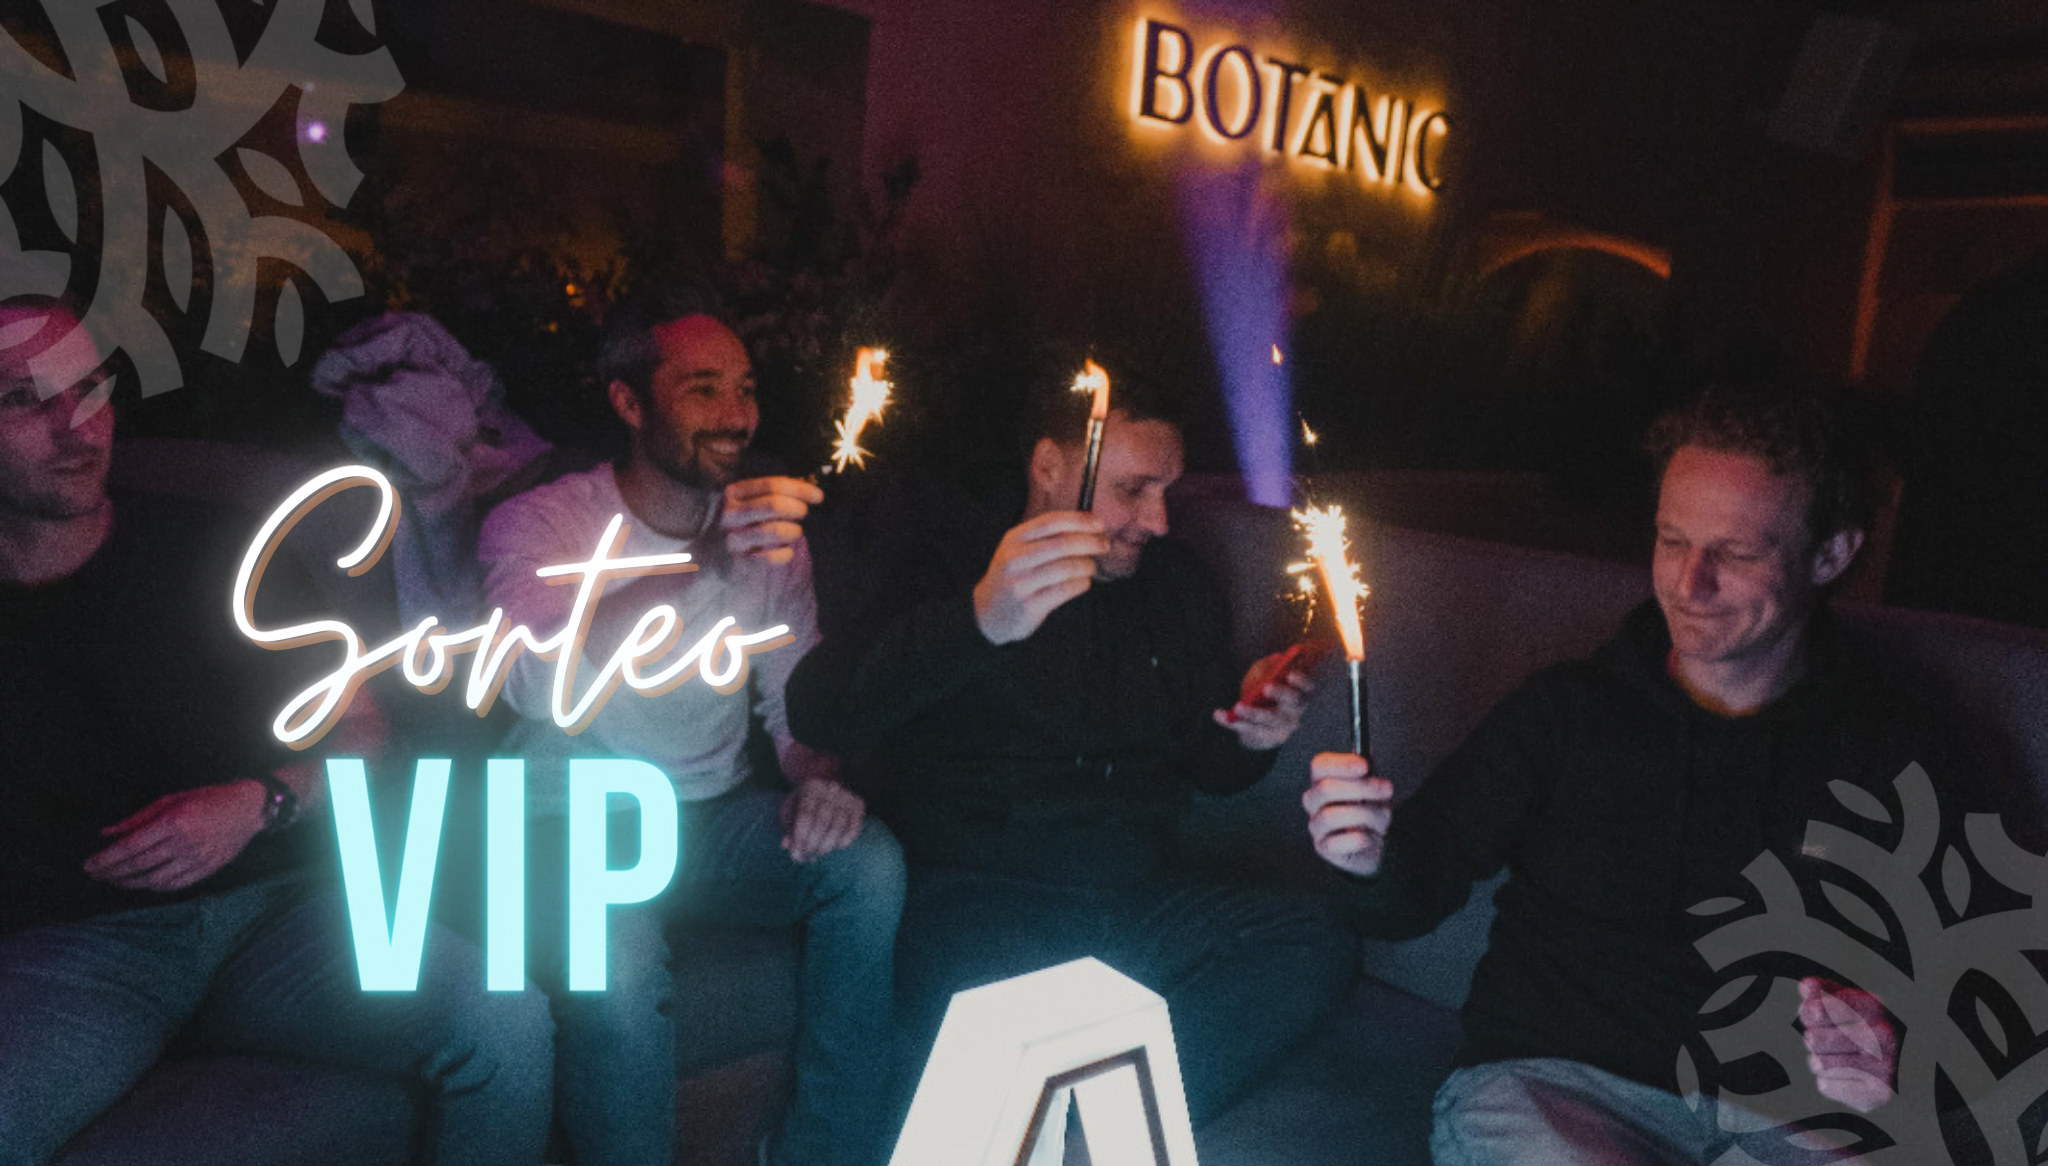 Botanic sortea una mesa VIP con botella para ocho personas